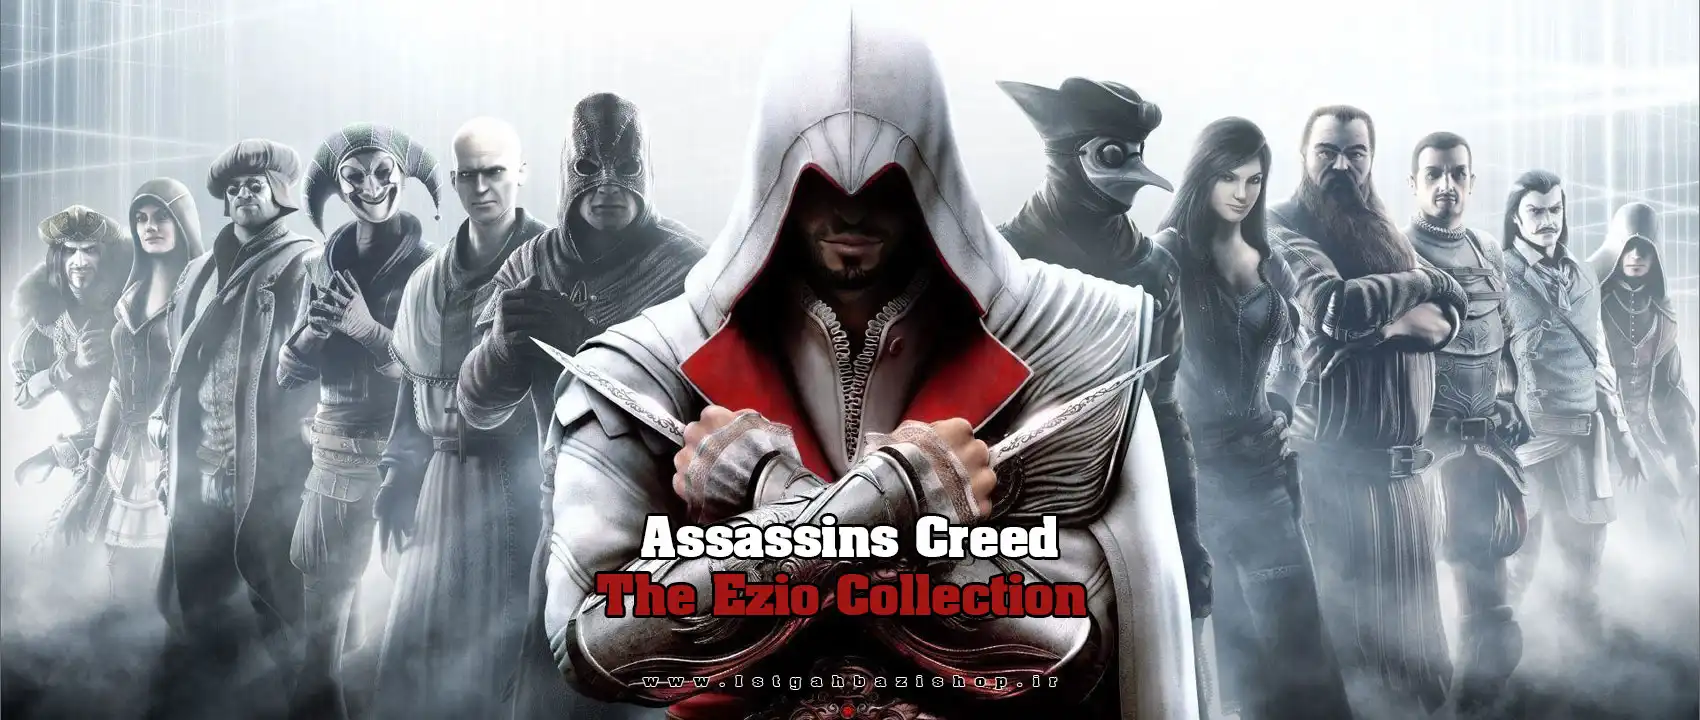 خرید بازی Assassins Creed The Ezio Collection